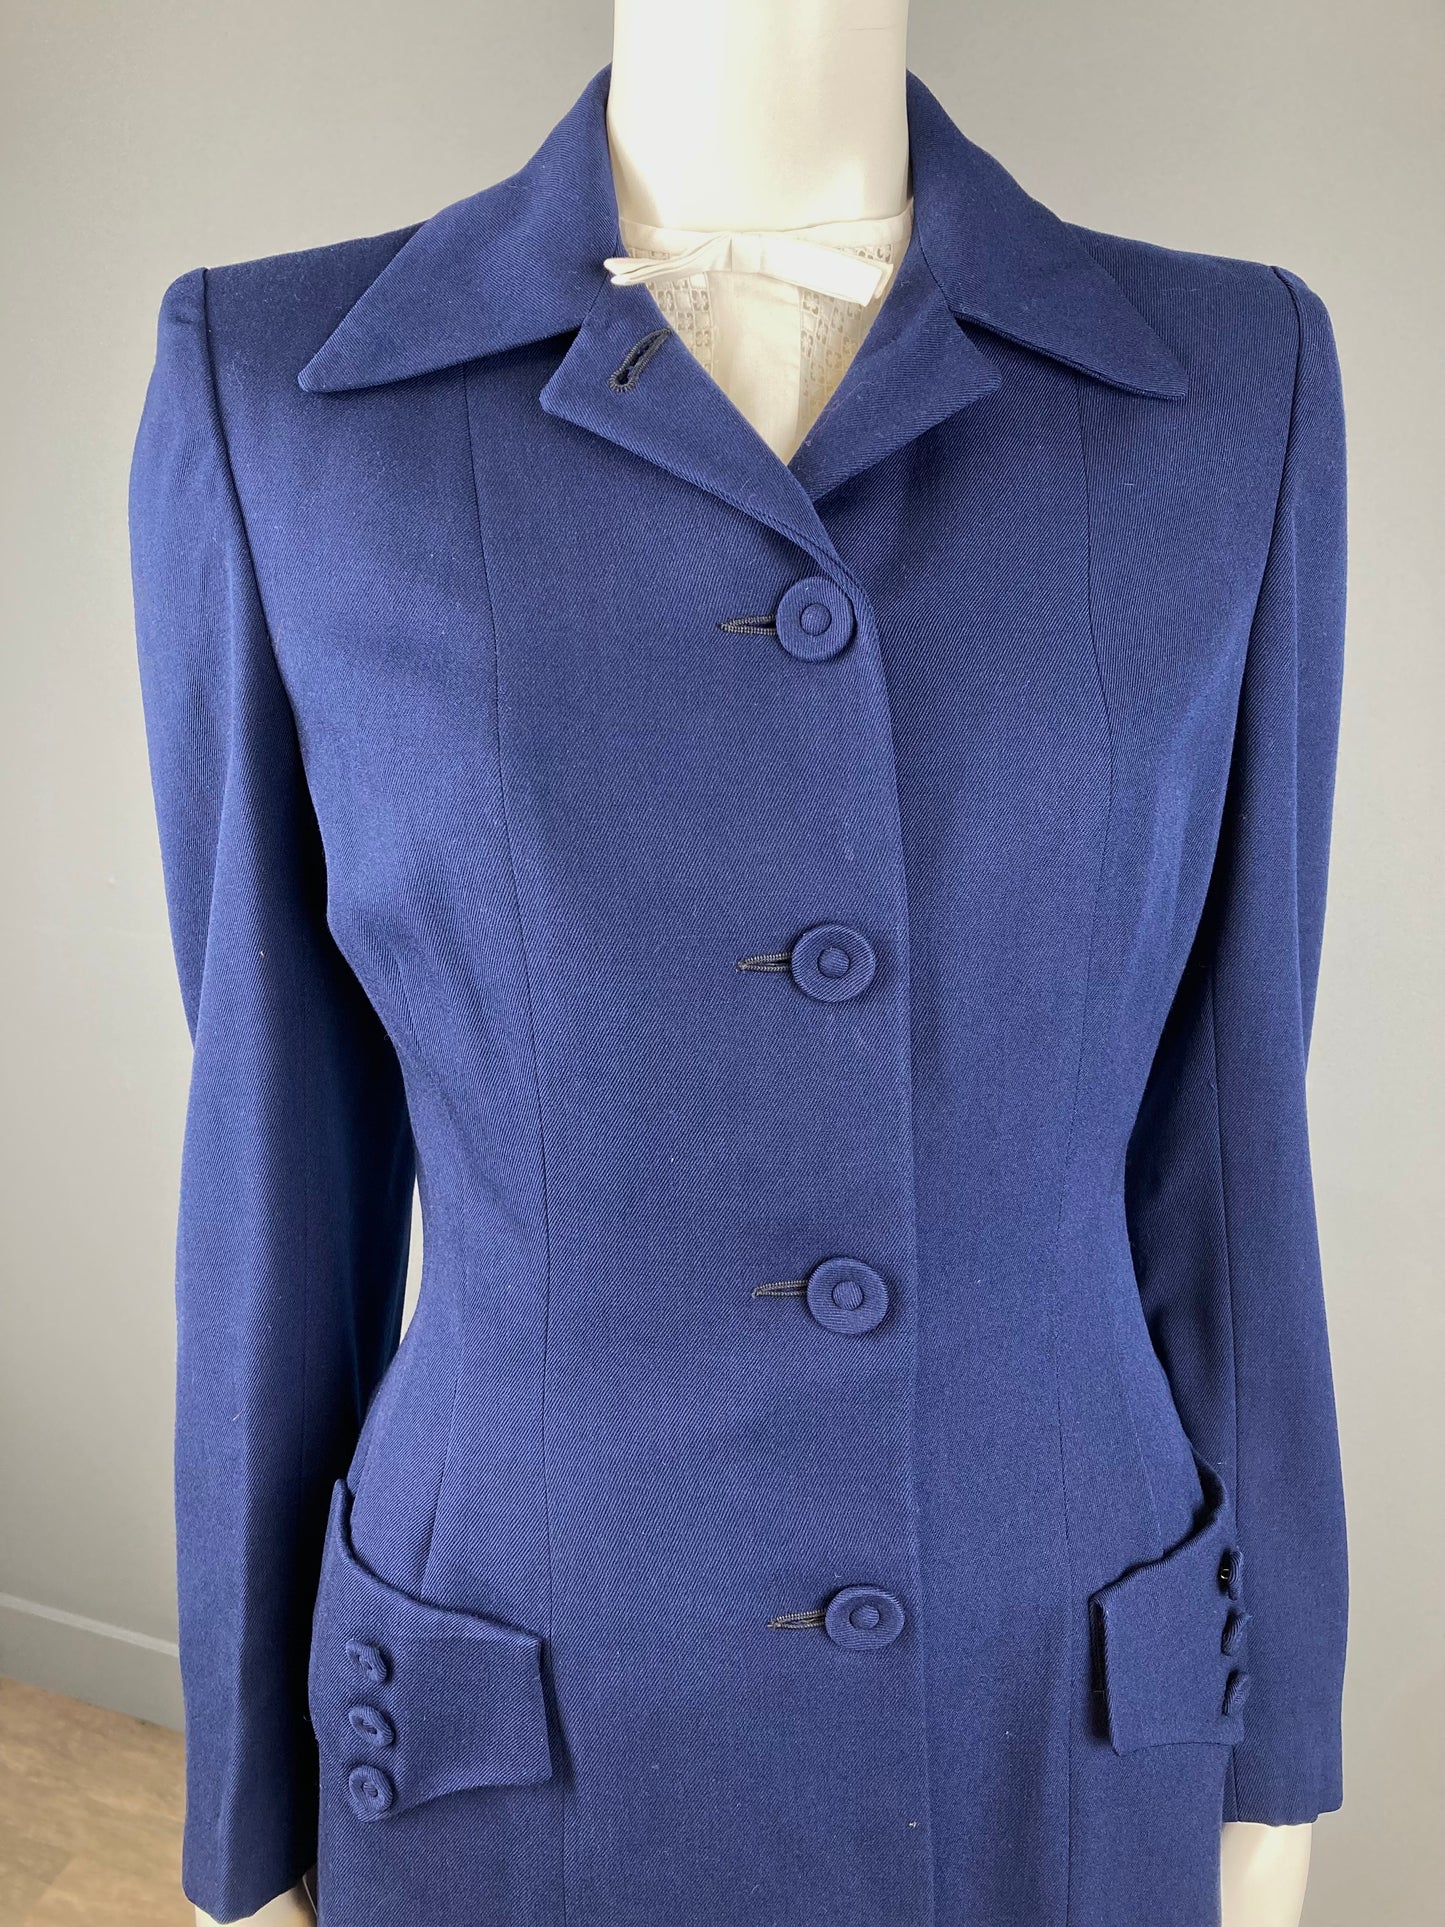 1940/50s Navy Blue Skirt & Jacket Suit, Size XS, Vintage Gabardine Suit